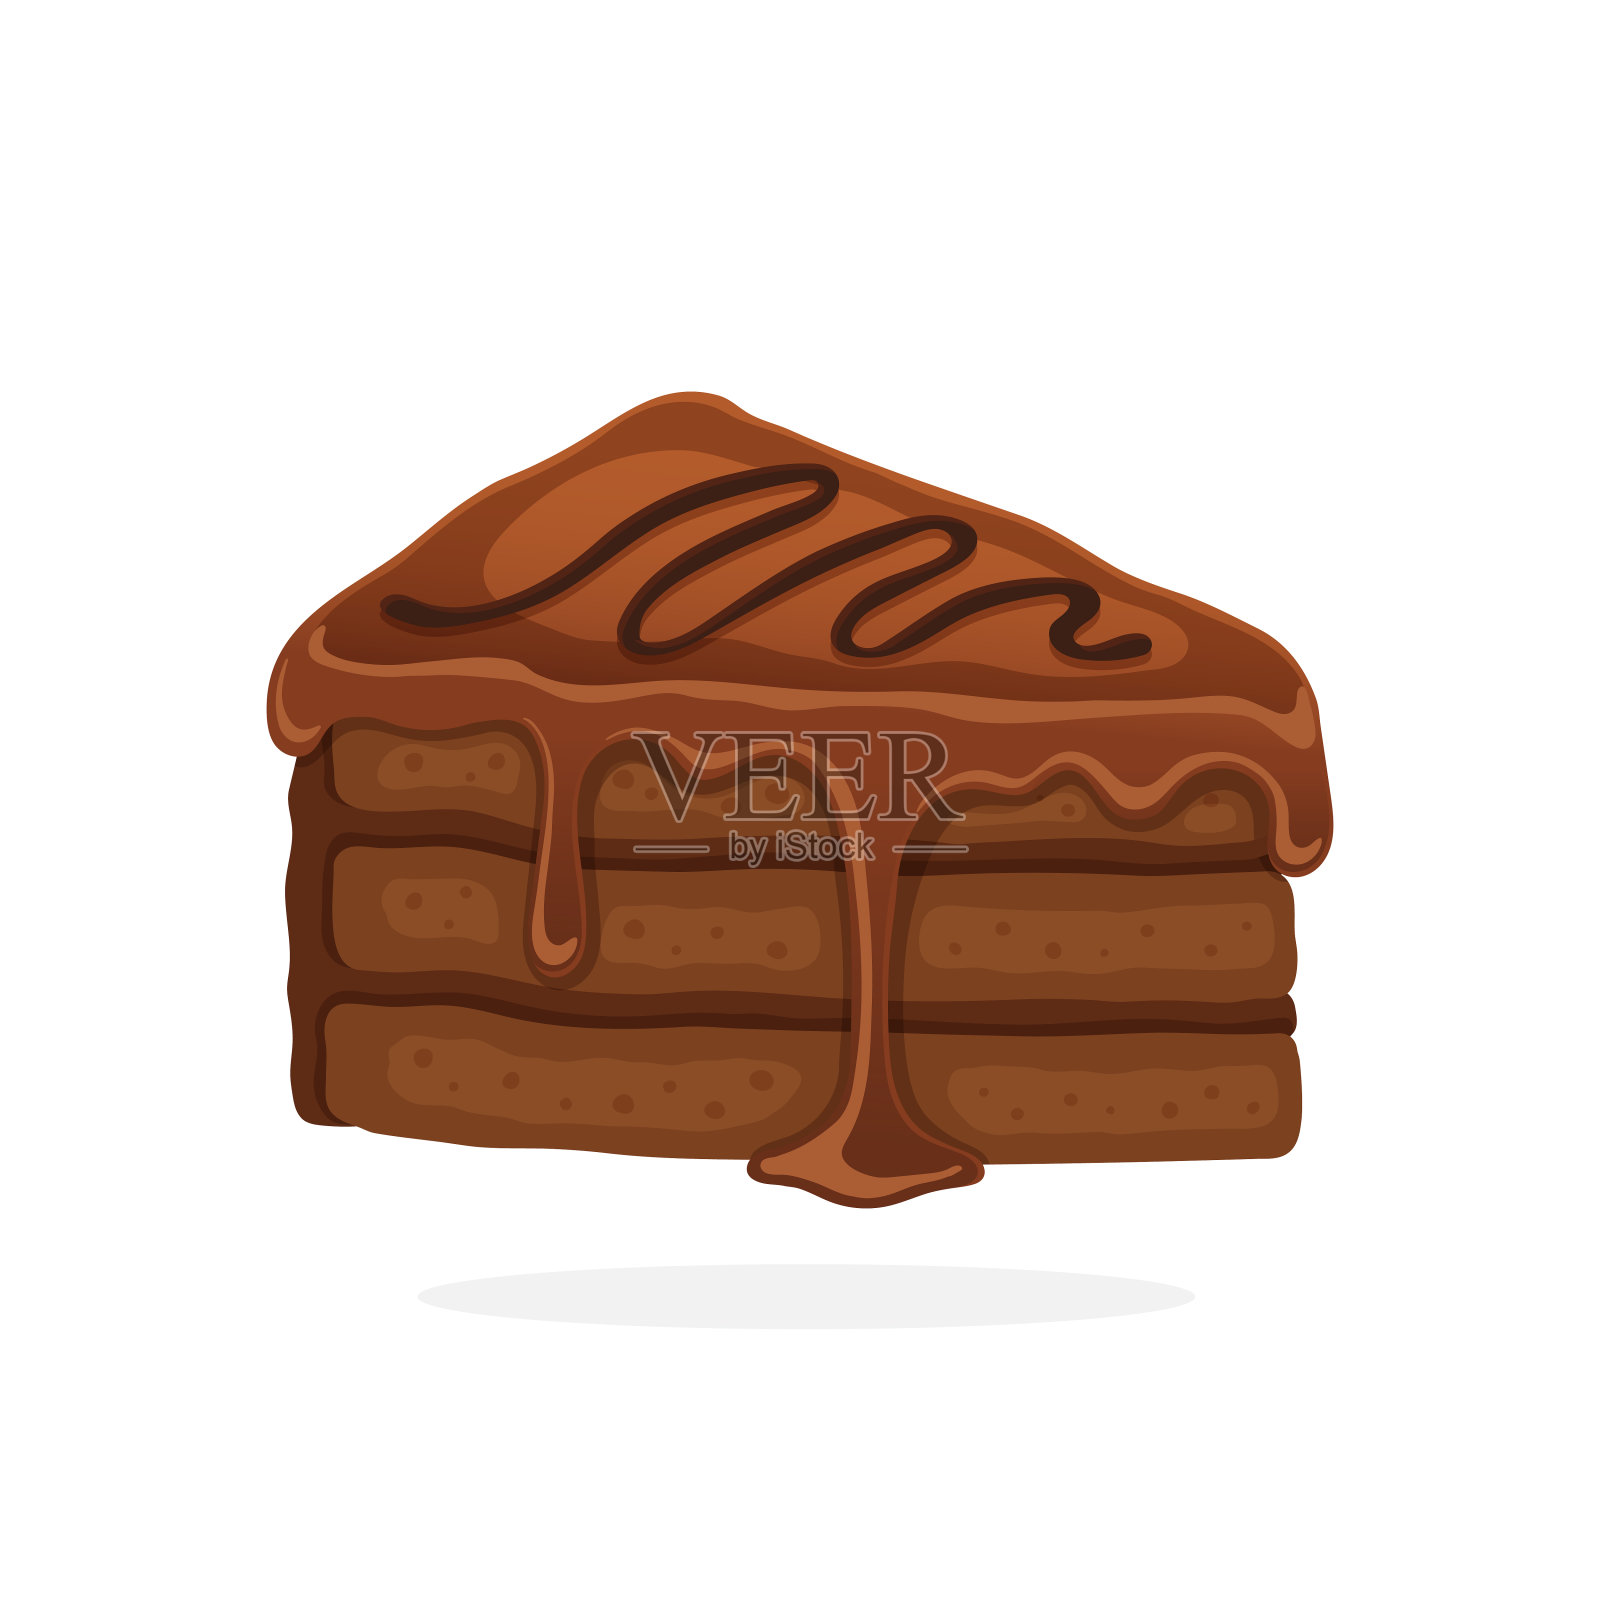 一块巧克力奶油和软糖蛋糕设计元素图片